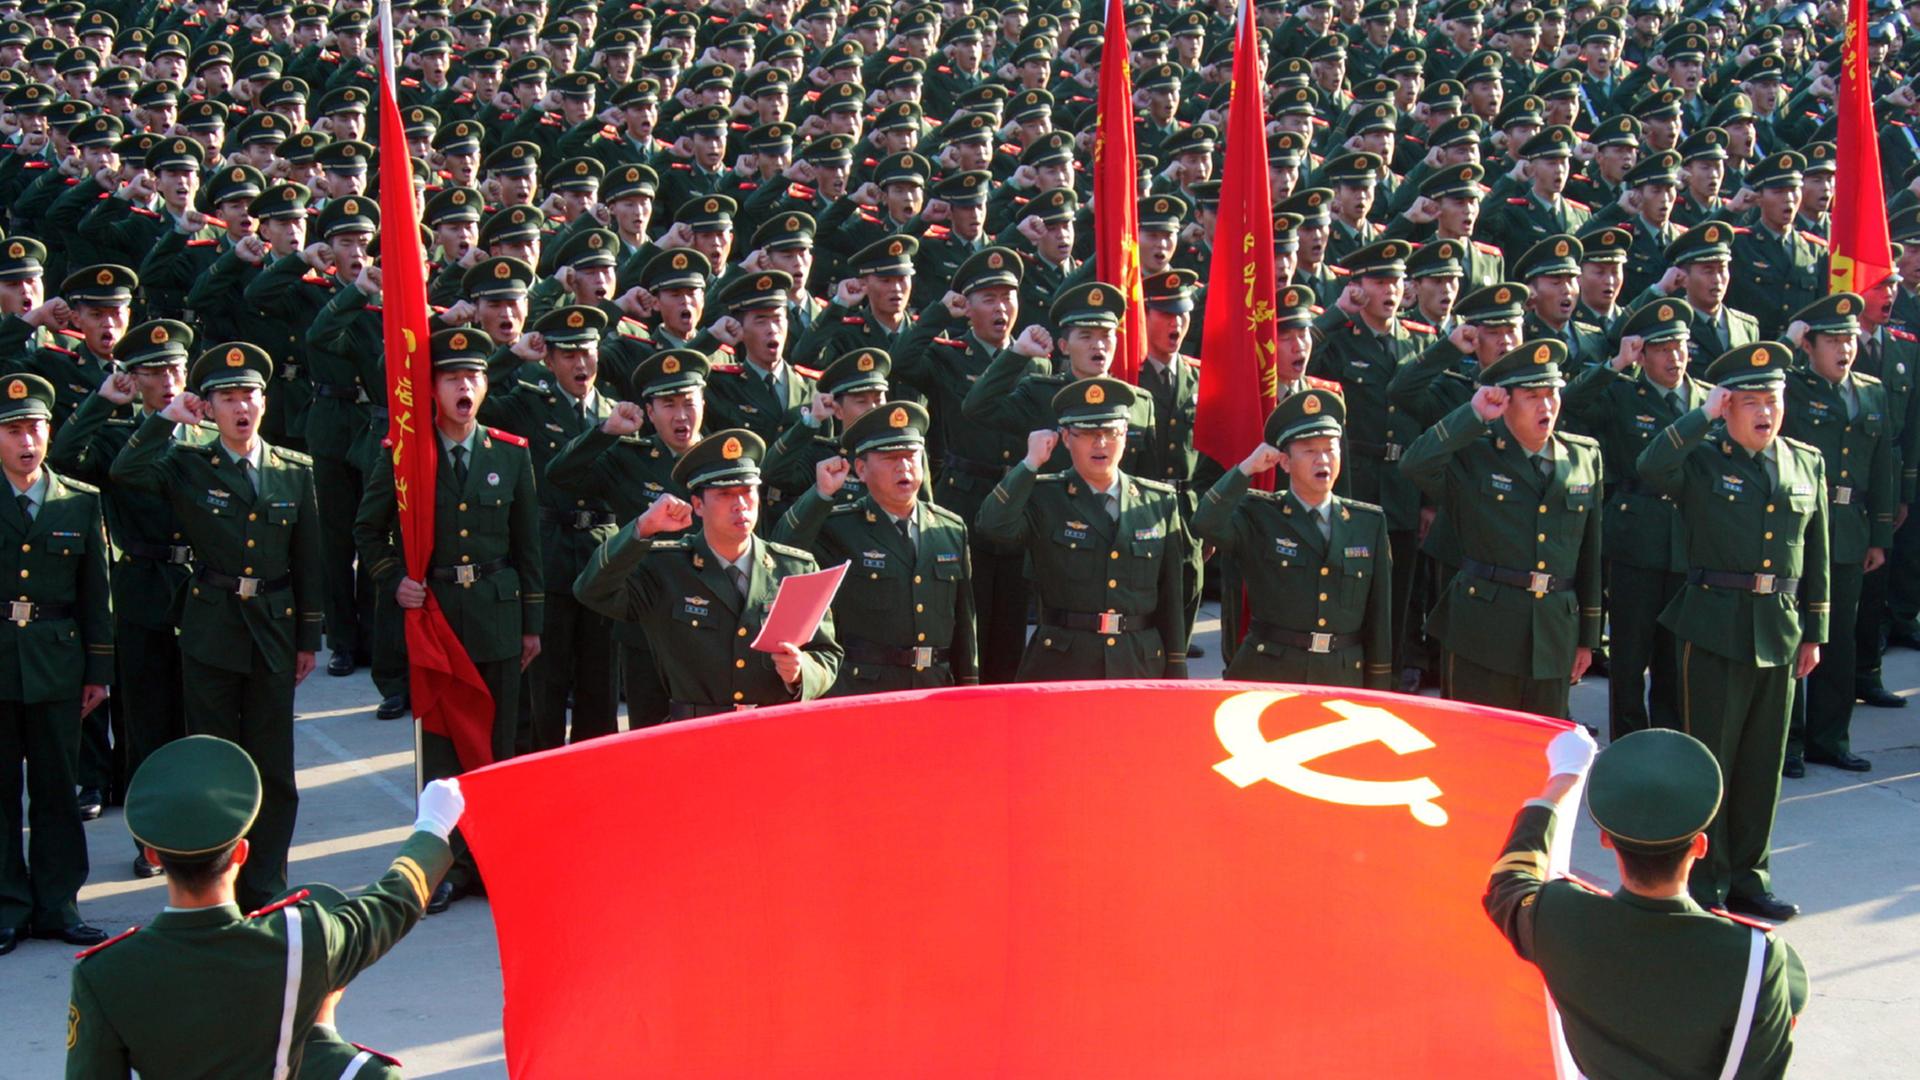 Vereidigung von paramilitärischen Polizeieinheiten in Peking 2012